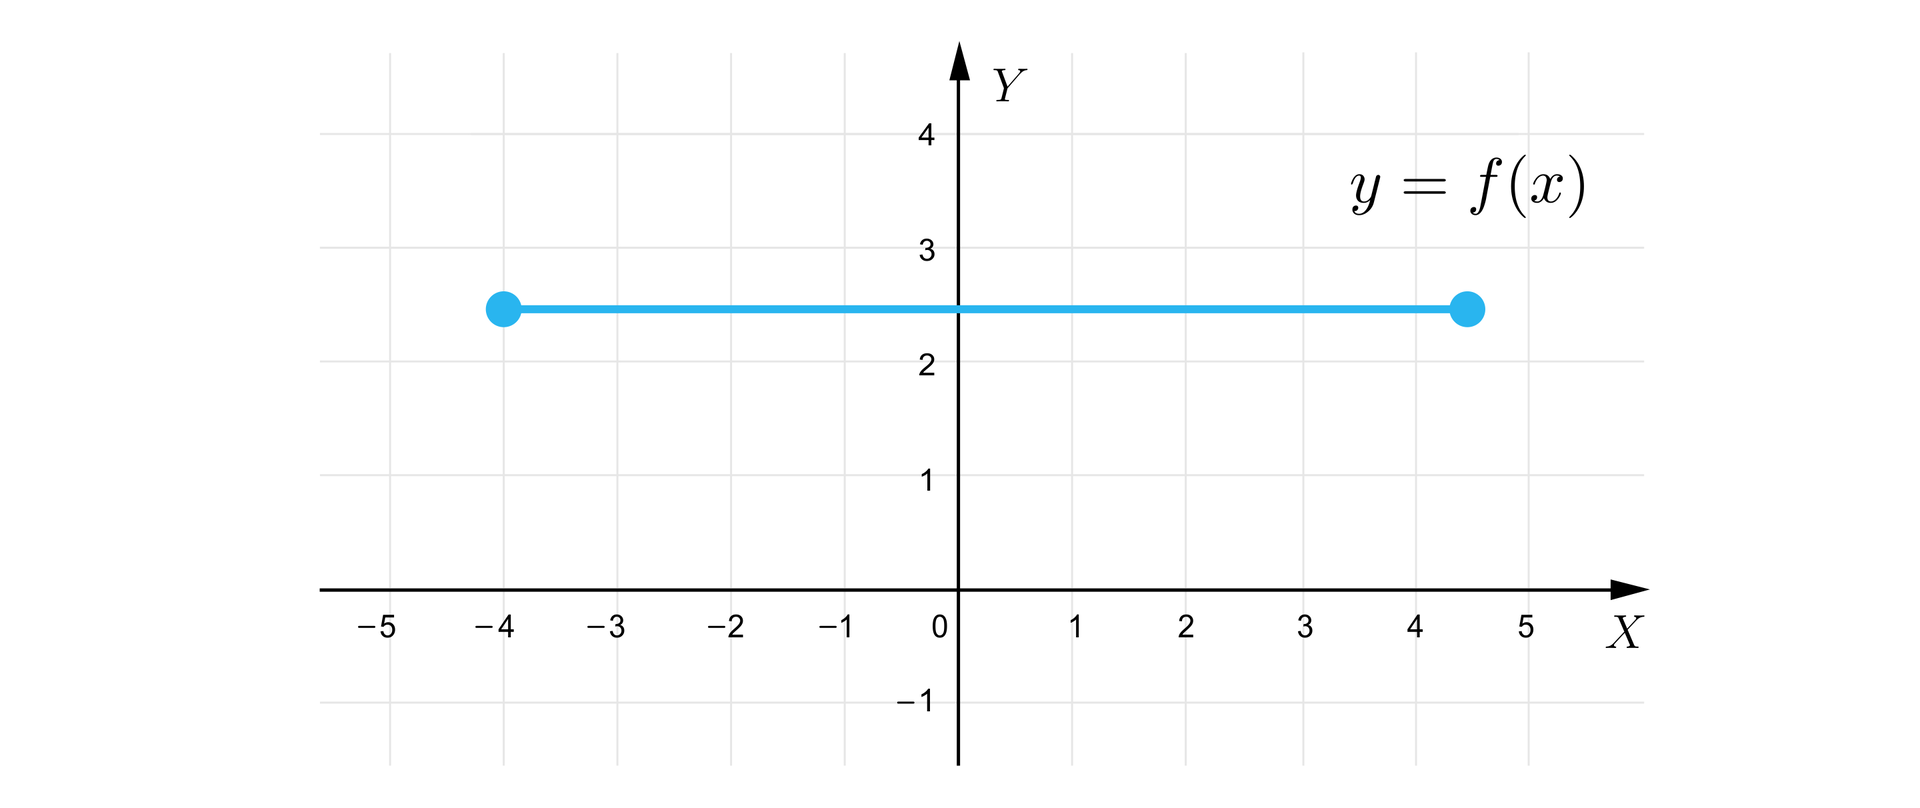 Grafika przedstawia układ współrzędnych z poziomą osią X od minus pięciu do pięciu oraz z pionową osią Y od minus jeden do czterech. Wykres składa się z poziomego odcinka o końcach w zamalowanych punktach o współrzędnych: -4;212 oraz 412;212.